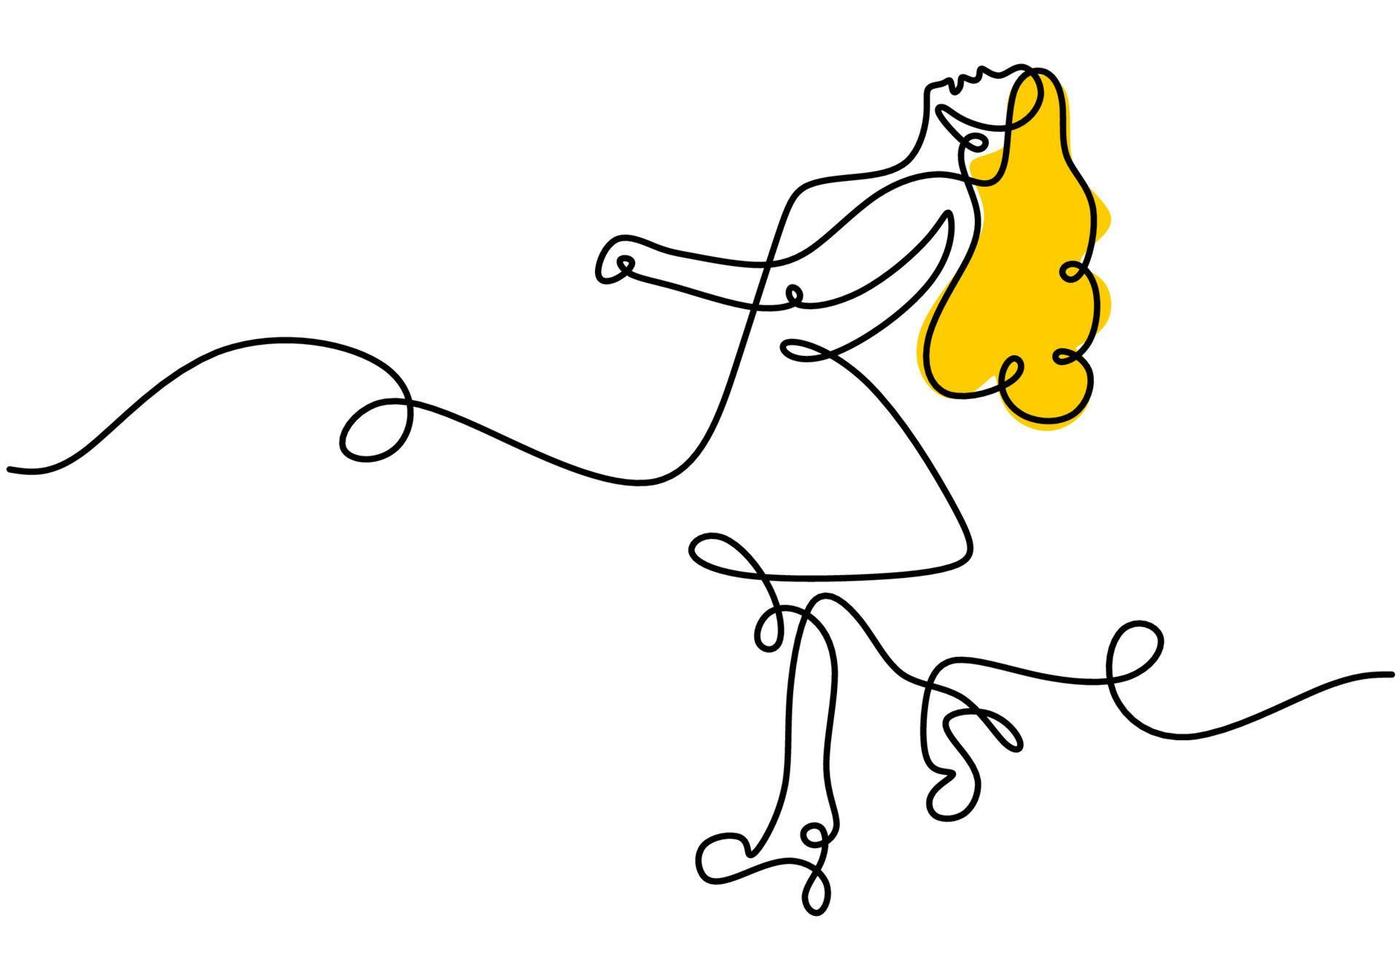 Dibujo continuo de una sola línea de mujer de cabello largo amarillo caminar en la calle vector